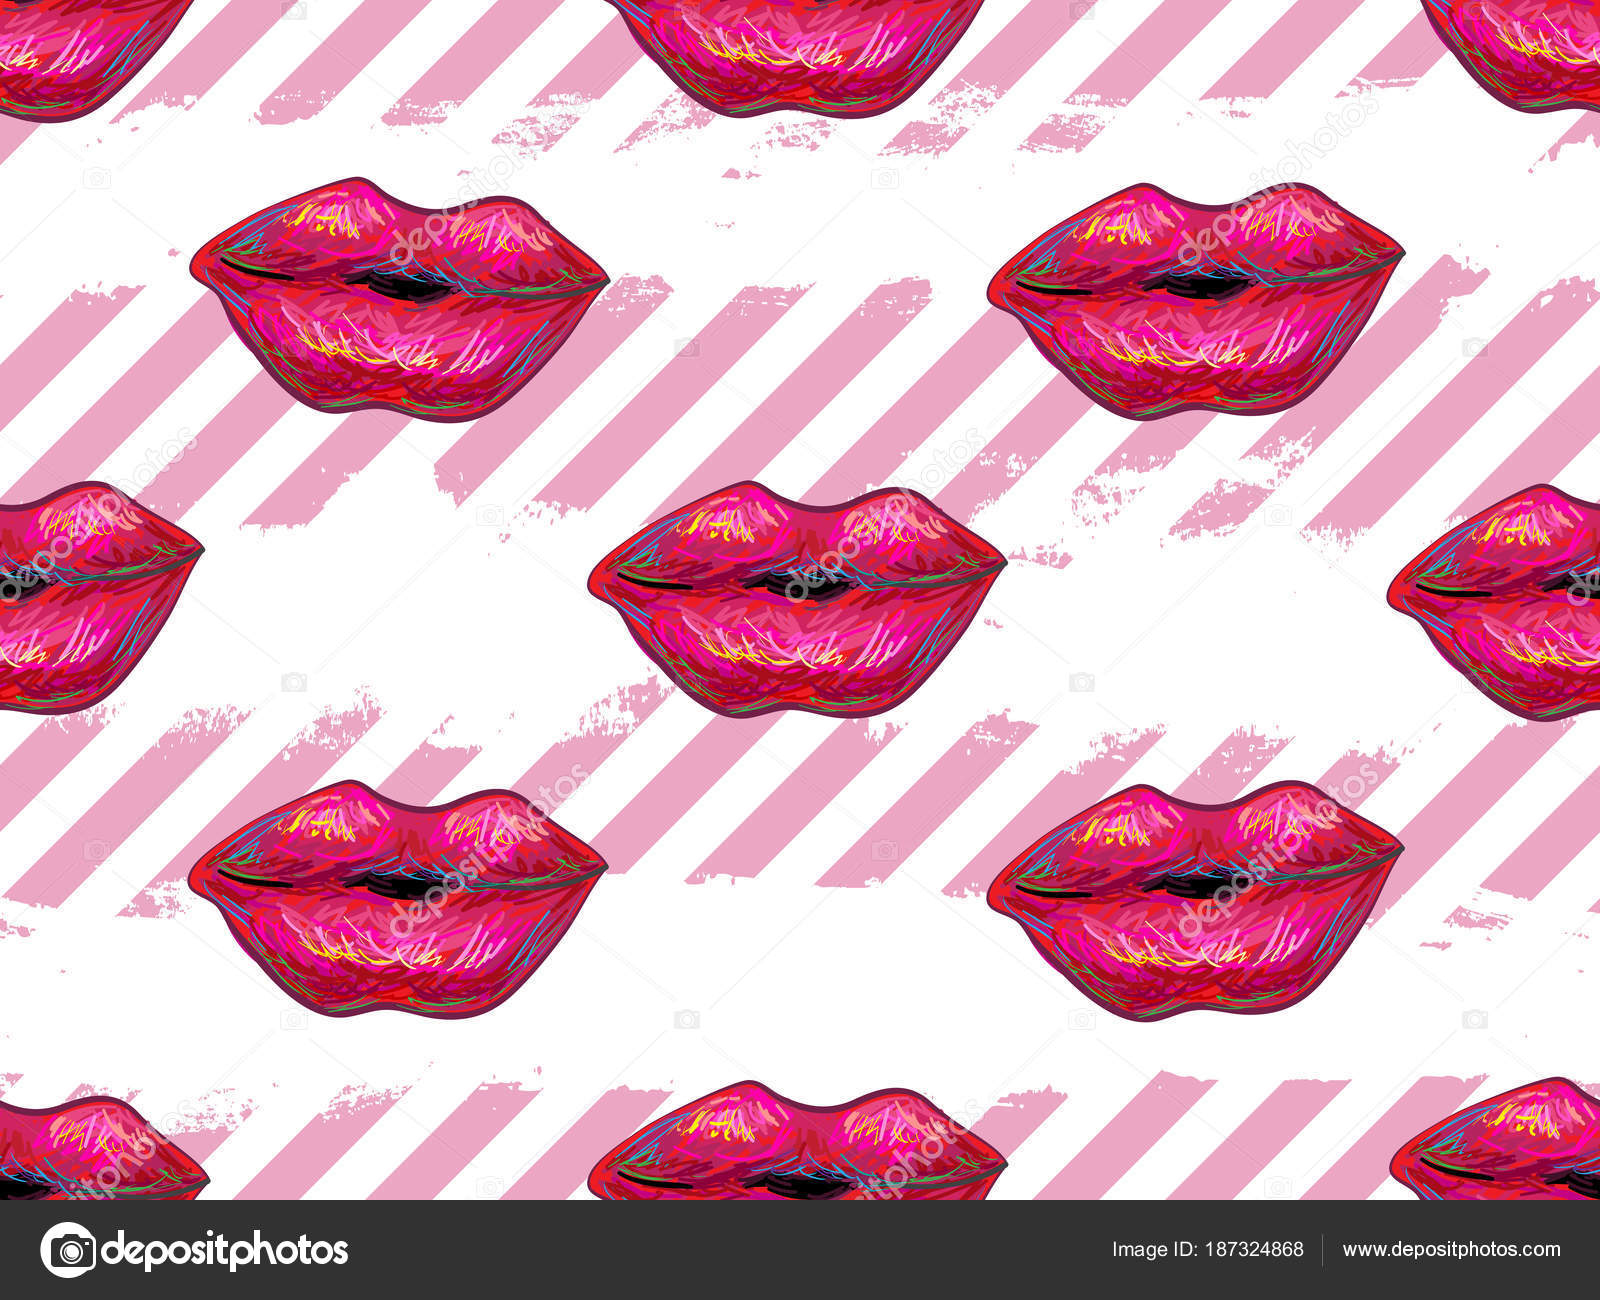 Kiss Me - HD Wallpaper 